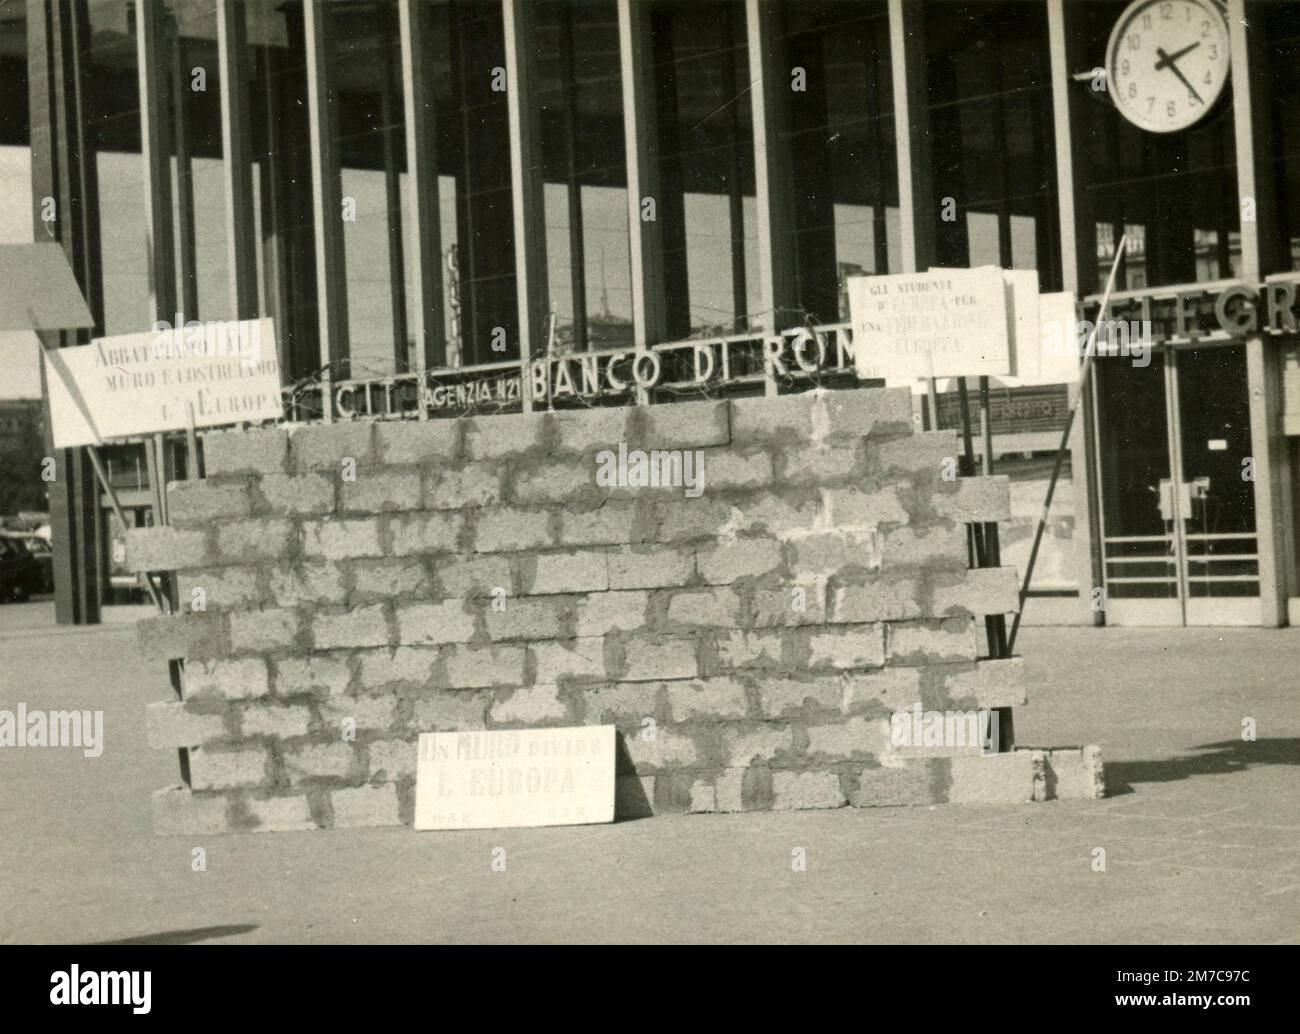 Manifestation contre le mur de Berlin à la gare Termini, Rome, Italie 1960s Banque D'Images